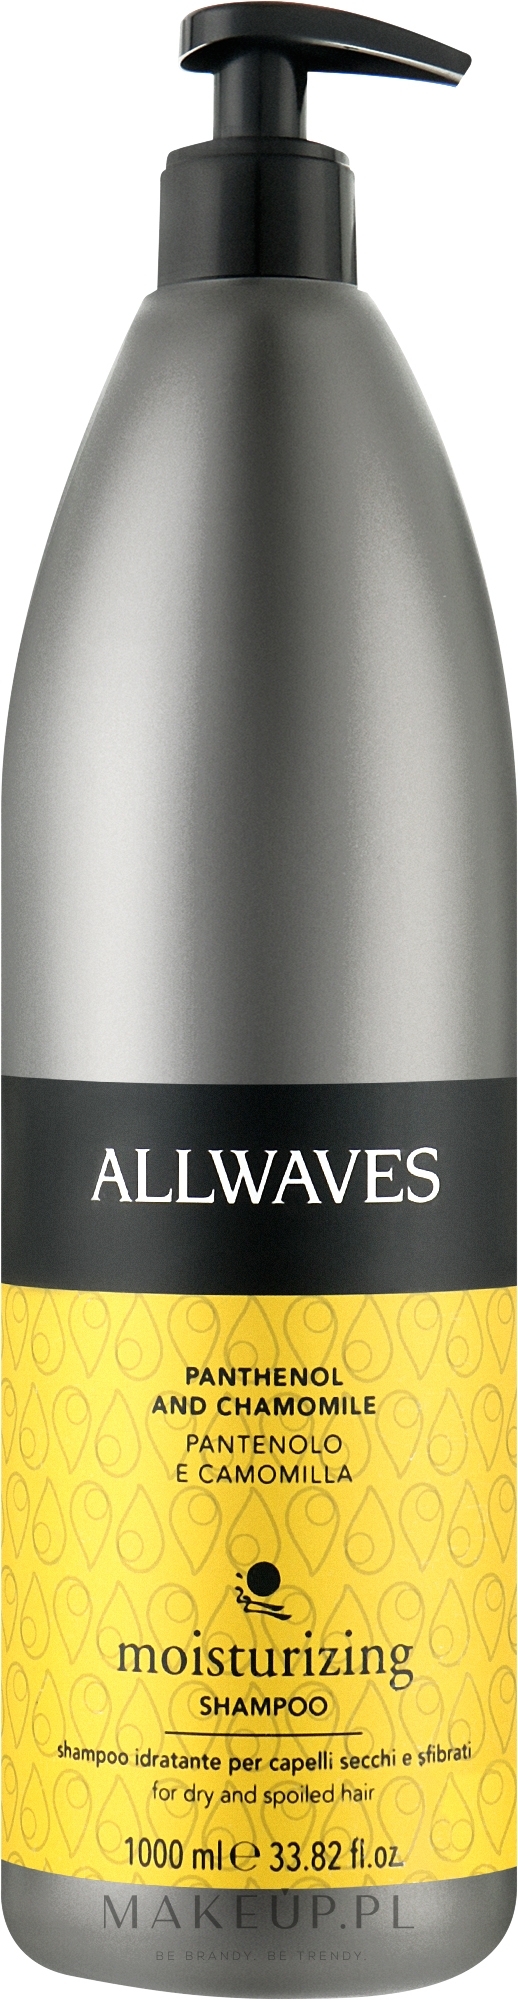 Nawilżający szampon do włosów - Allwaves Idratante Moisturizing Shampoo — Zdjęcie 1000 ml